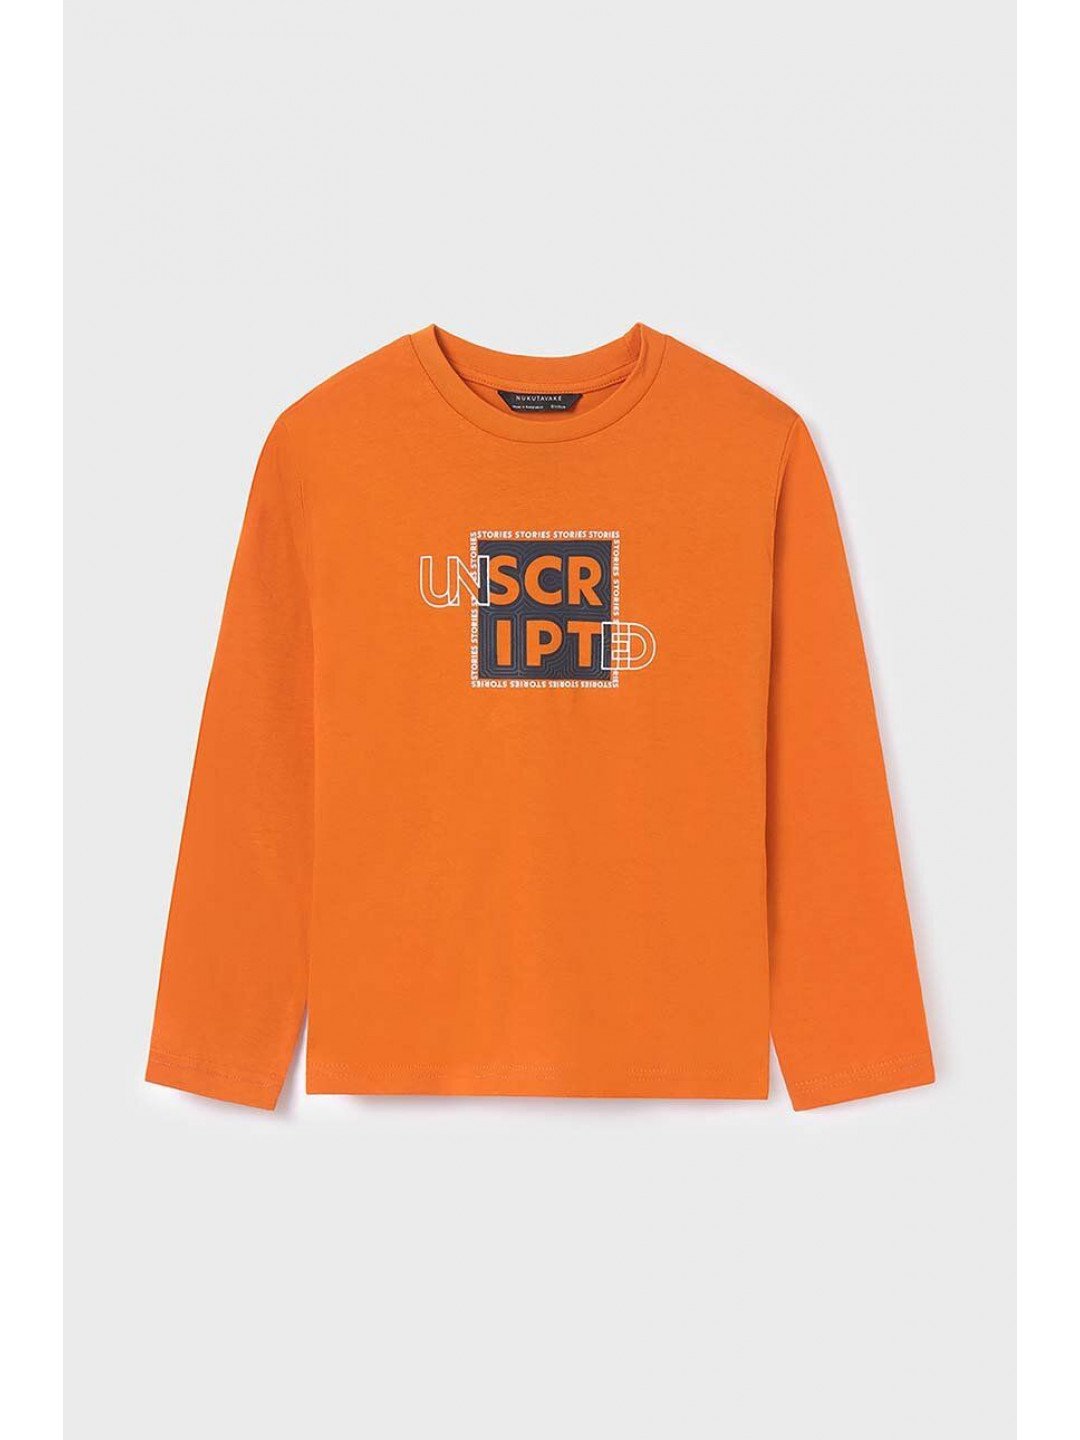 Dětské bavlněné tričko s dlouhým rukávem Mayoral oranžová barva s potiskem